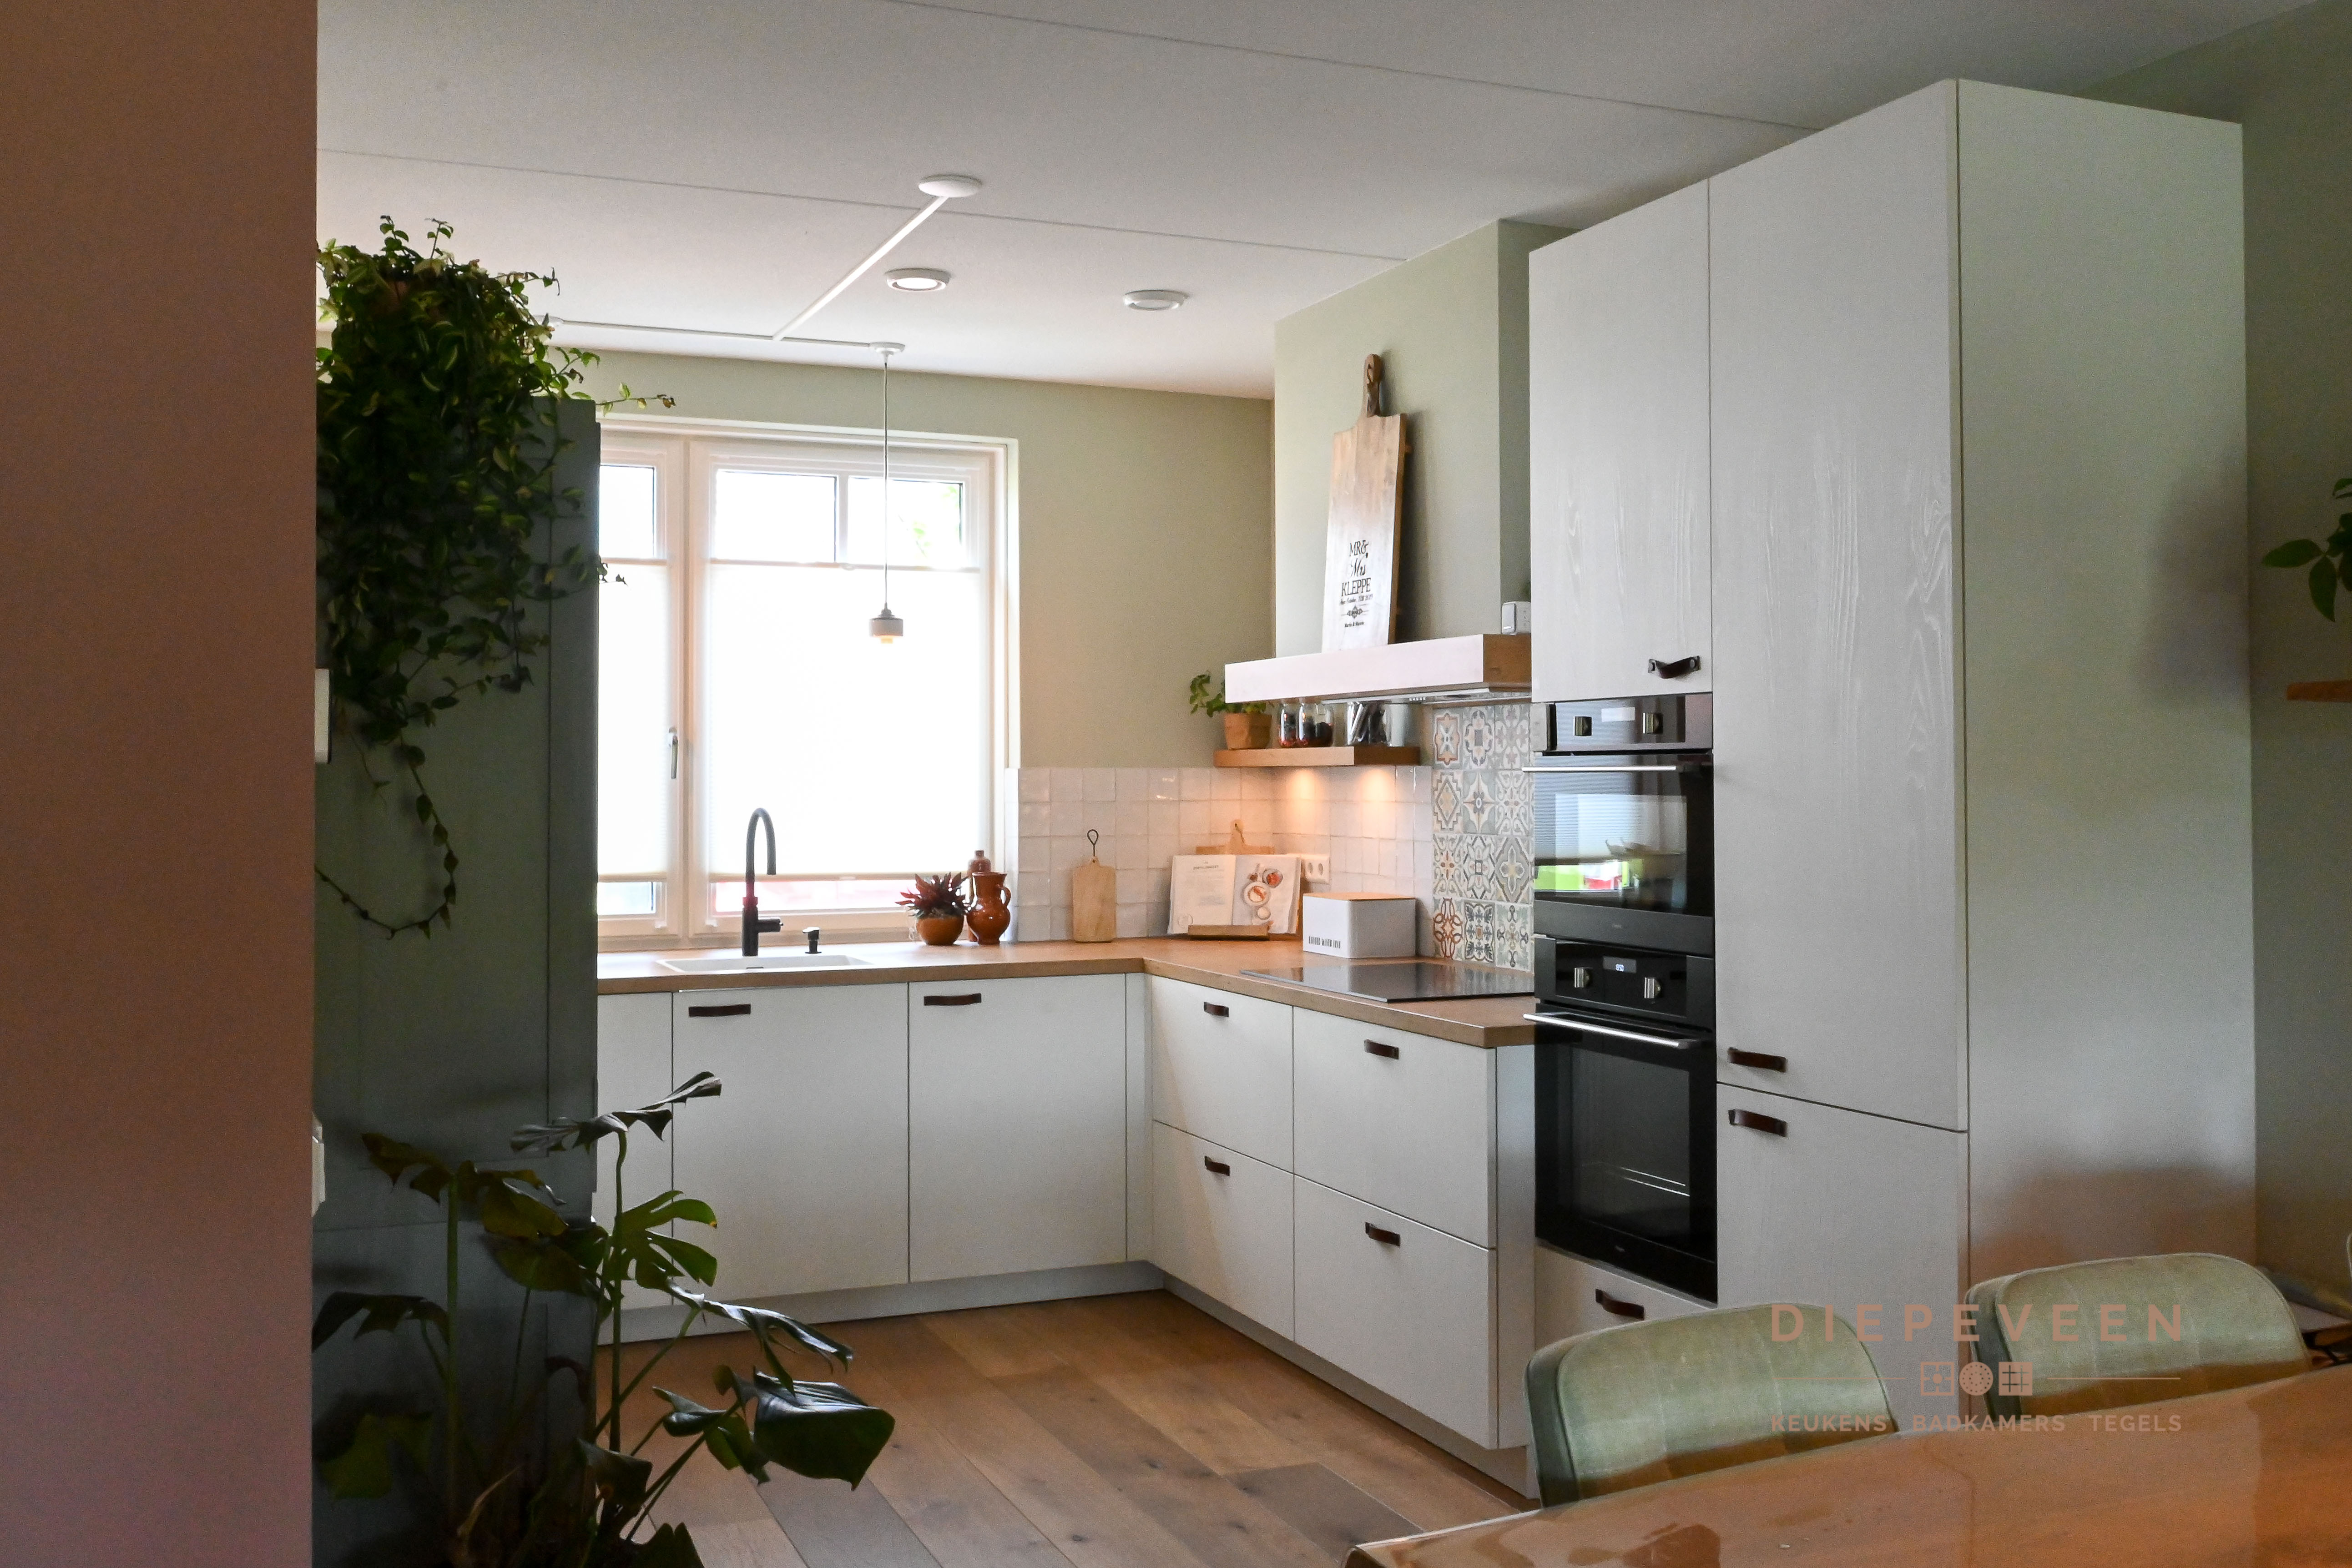 Foto : Gezellige compacte keuken